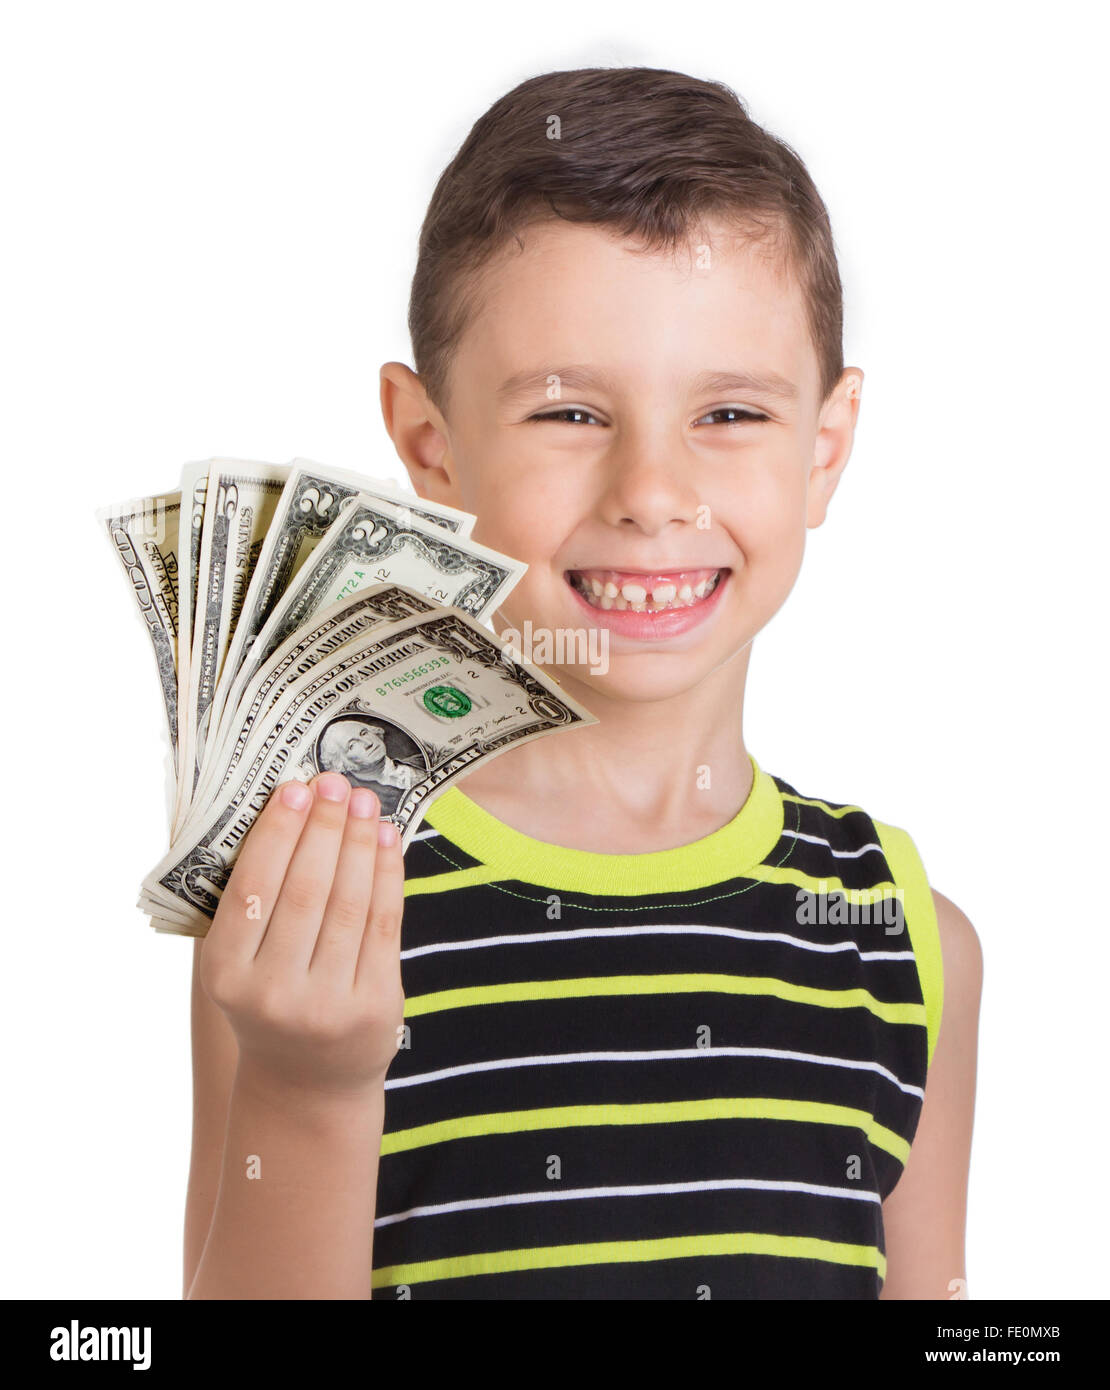 Happy kid with money Stock Photo